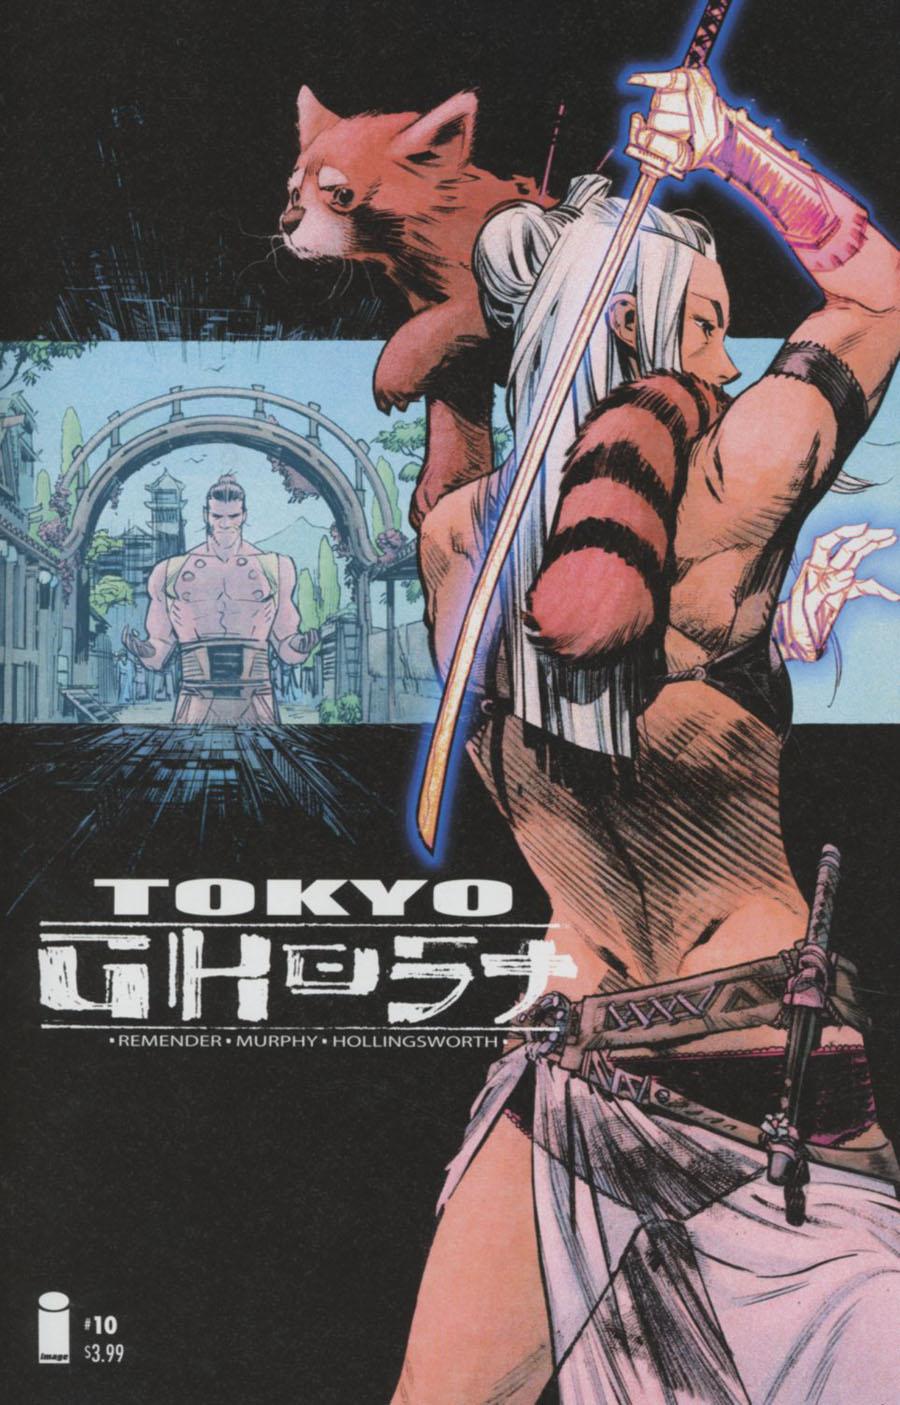 Tokyo Ghost Vol. 1 #10